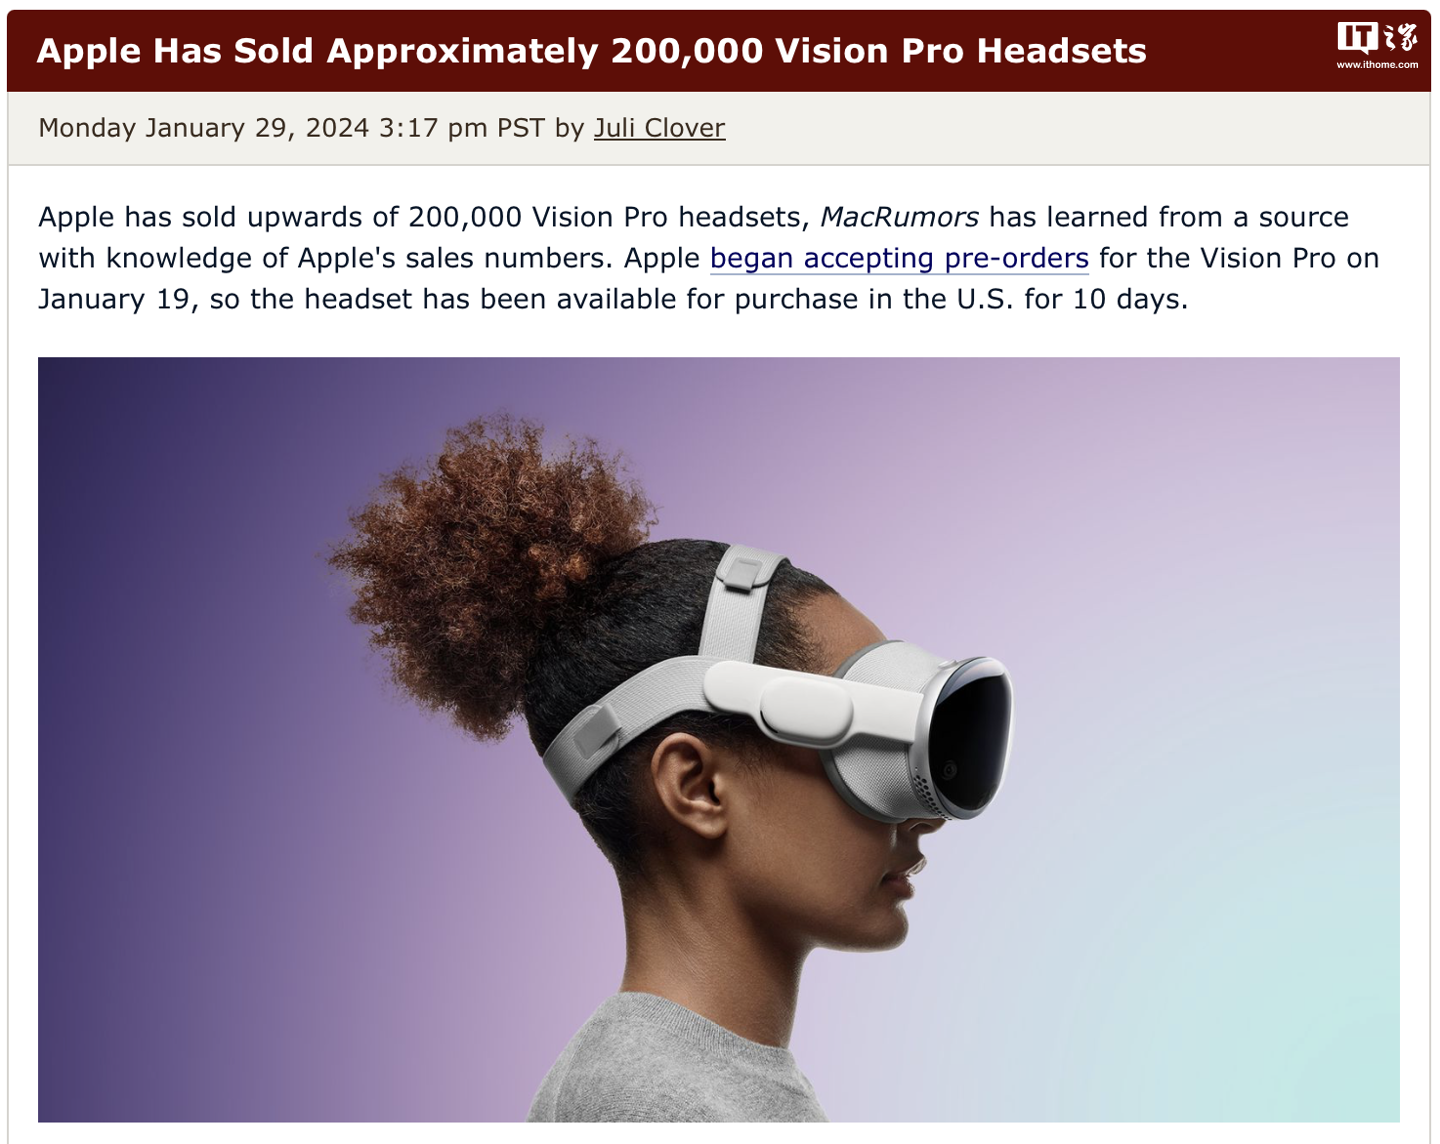 消息称苹果已在美预售超过 20 万台 Vision Pro 头显，获 6.998 亿美元收入